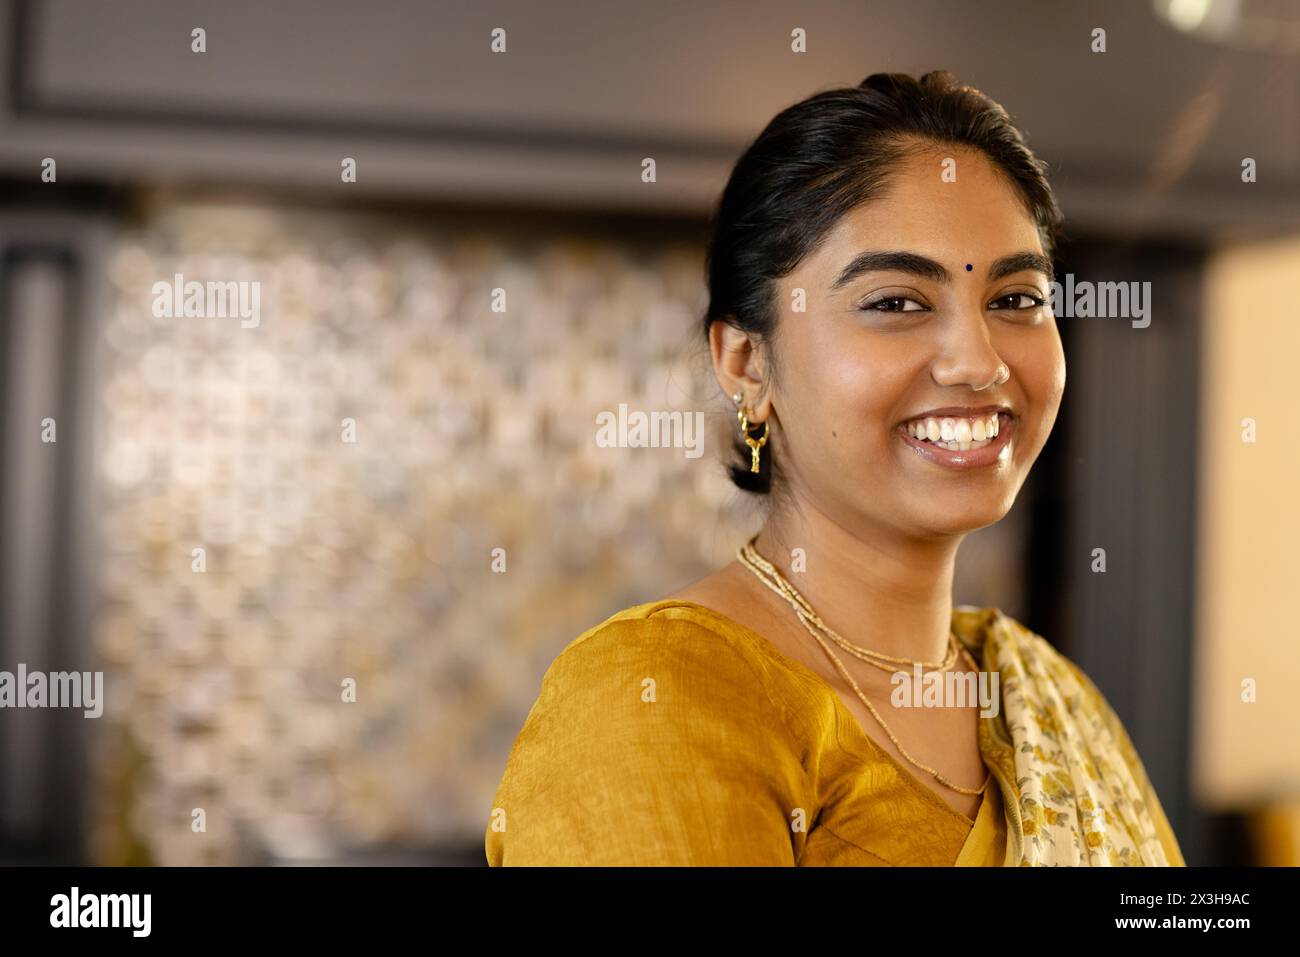 Jeune femme indienne portant une tenue traditionnelle jaune souriante à la maison, espace copie Banque D'Images